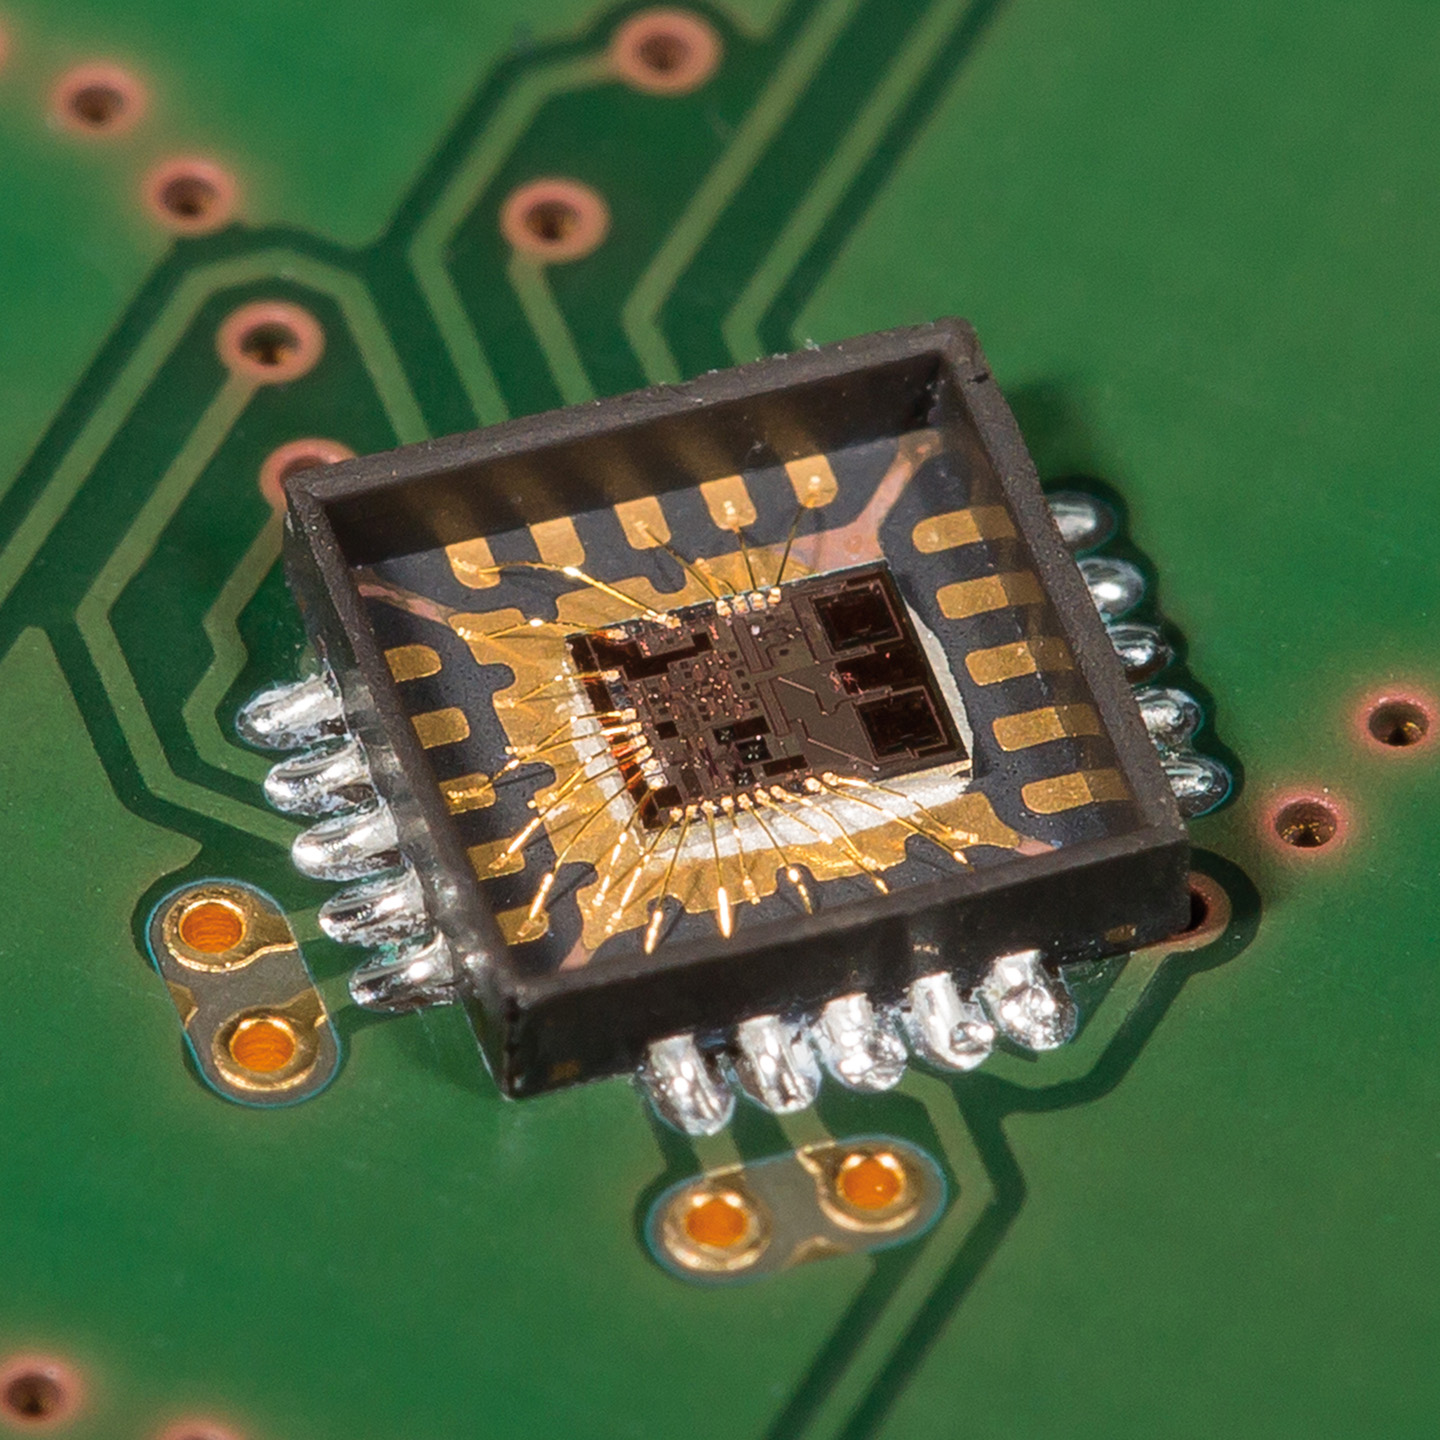 240 GHz SiGe Transceiver MMIC mit integrierten Antennen. Auf diesem kleinen Chip sind alle hochfrequenten Komponenten des Radarsystems enthalten.